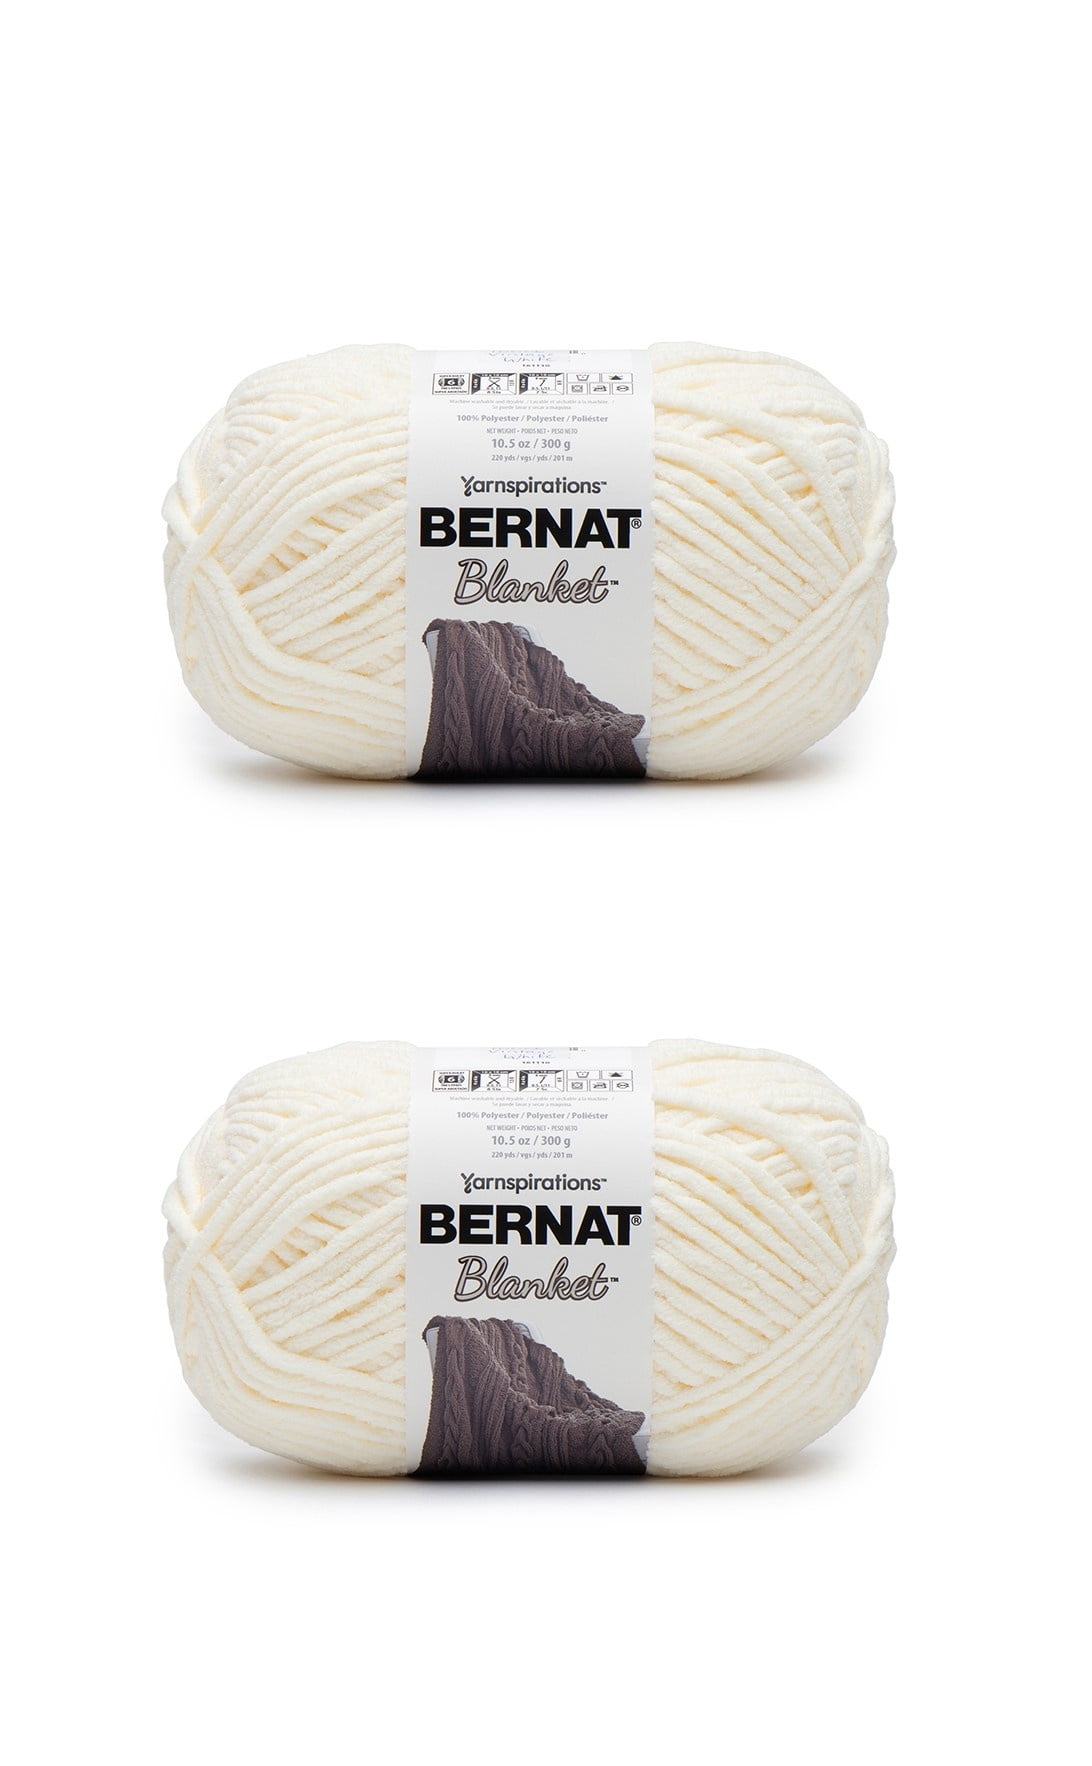 Bernat Blanket Extra Thick Yarn (600g/21.2 oz), Vintage White